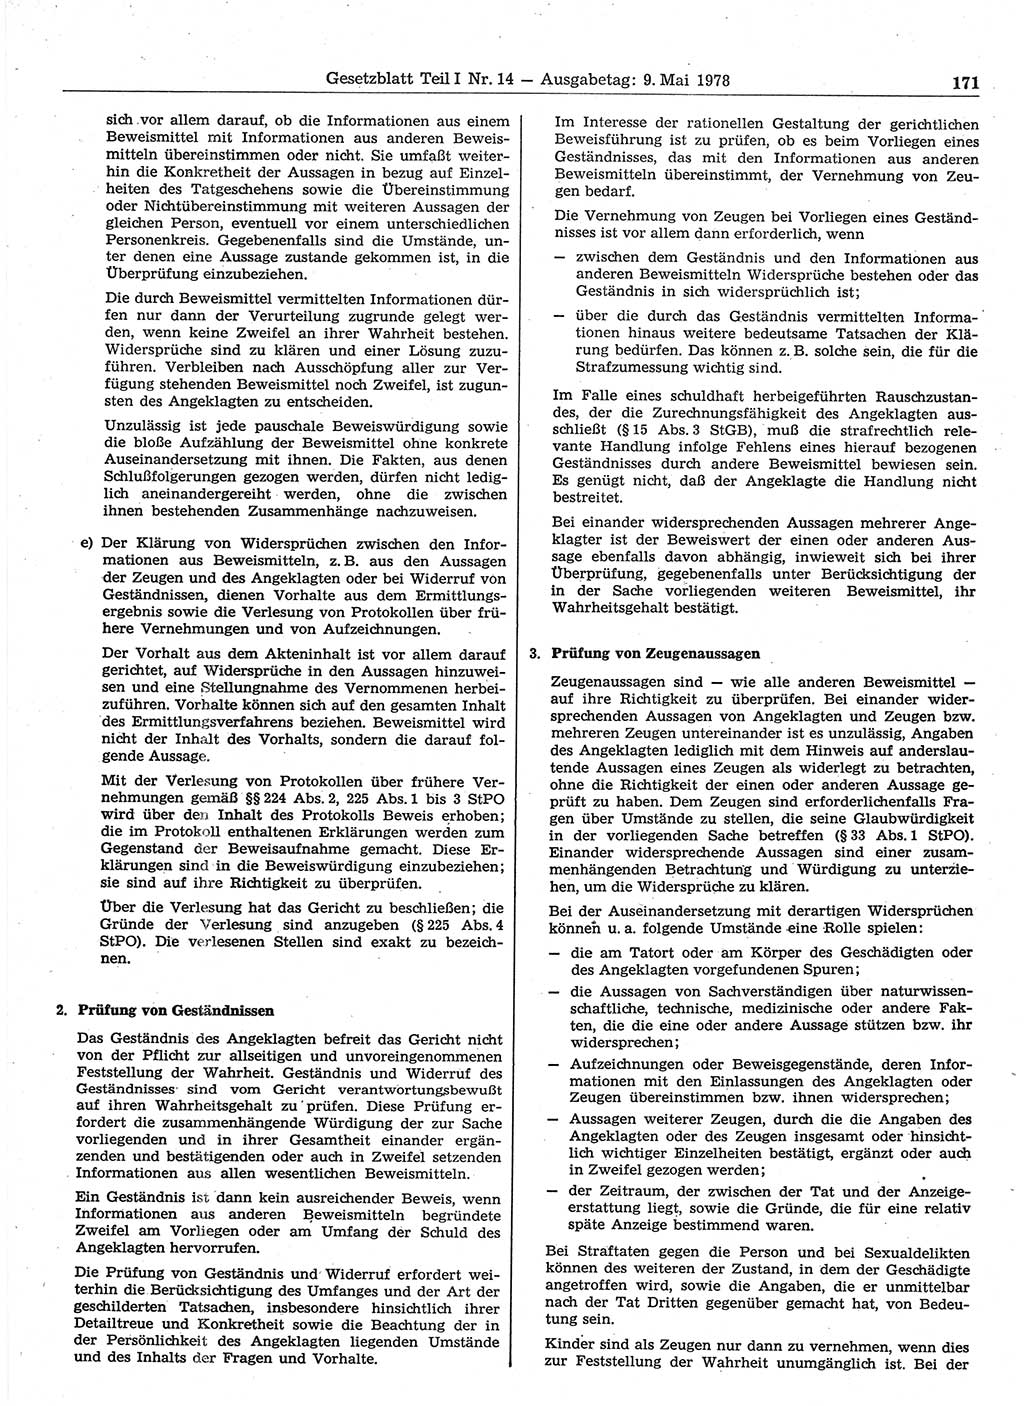 Gesetzblatt (GBl.) der Deutschen Demokratischen Republik (DDR) Teil Ⅰ 1978, Seite 171 (GBl. DDR Ⅰ 1978, S. 171)